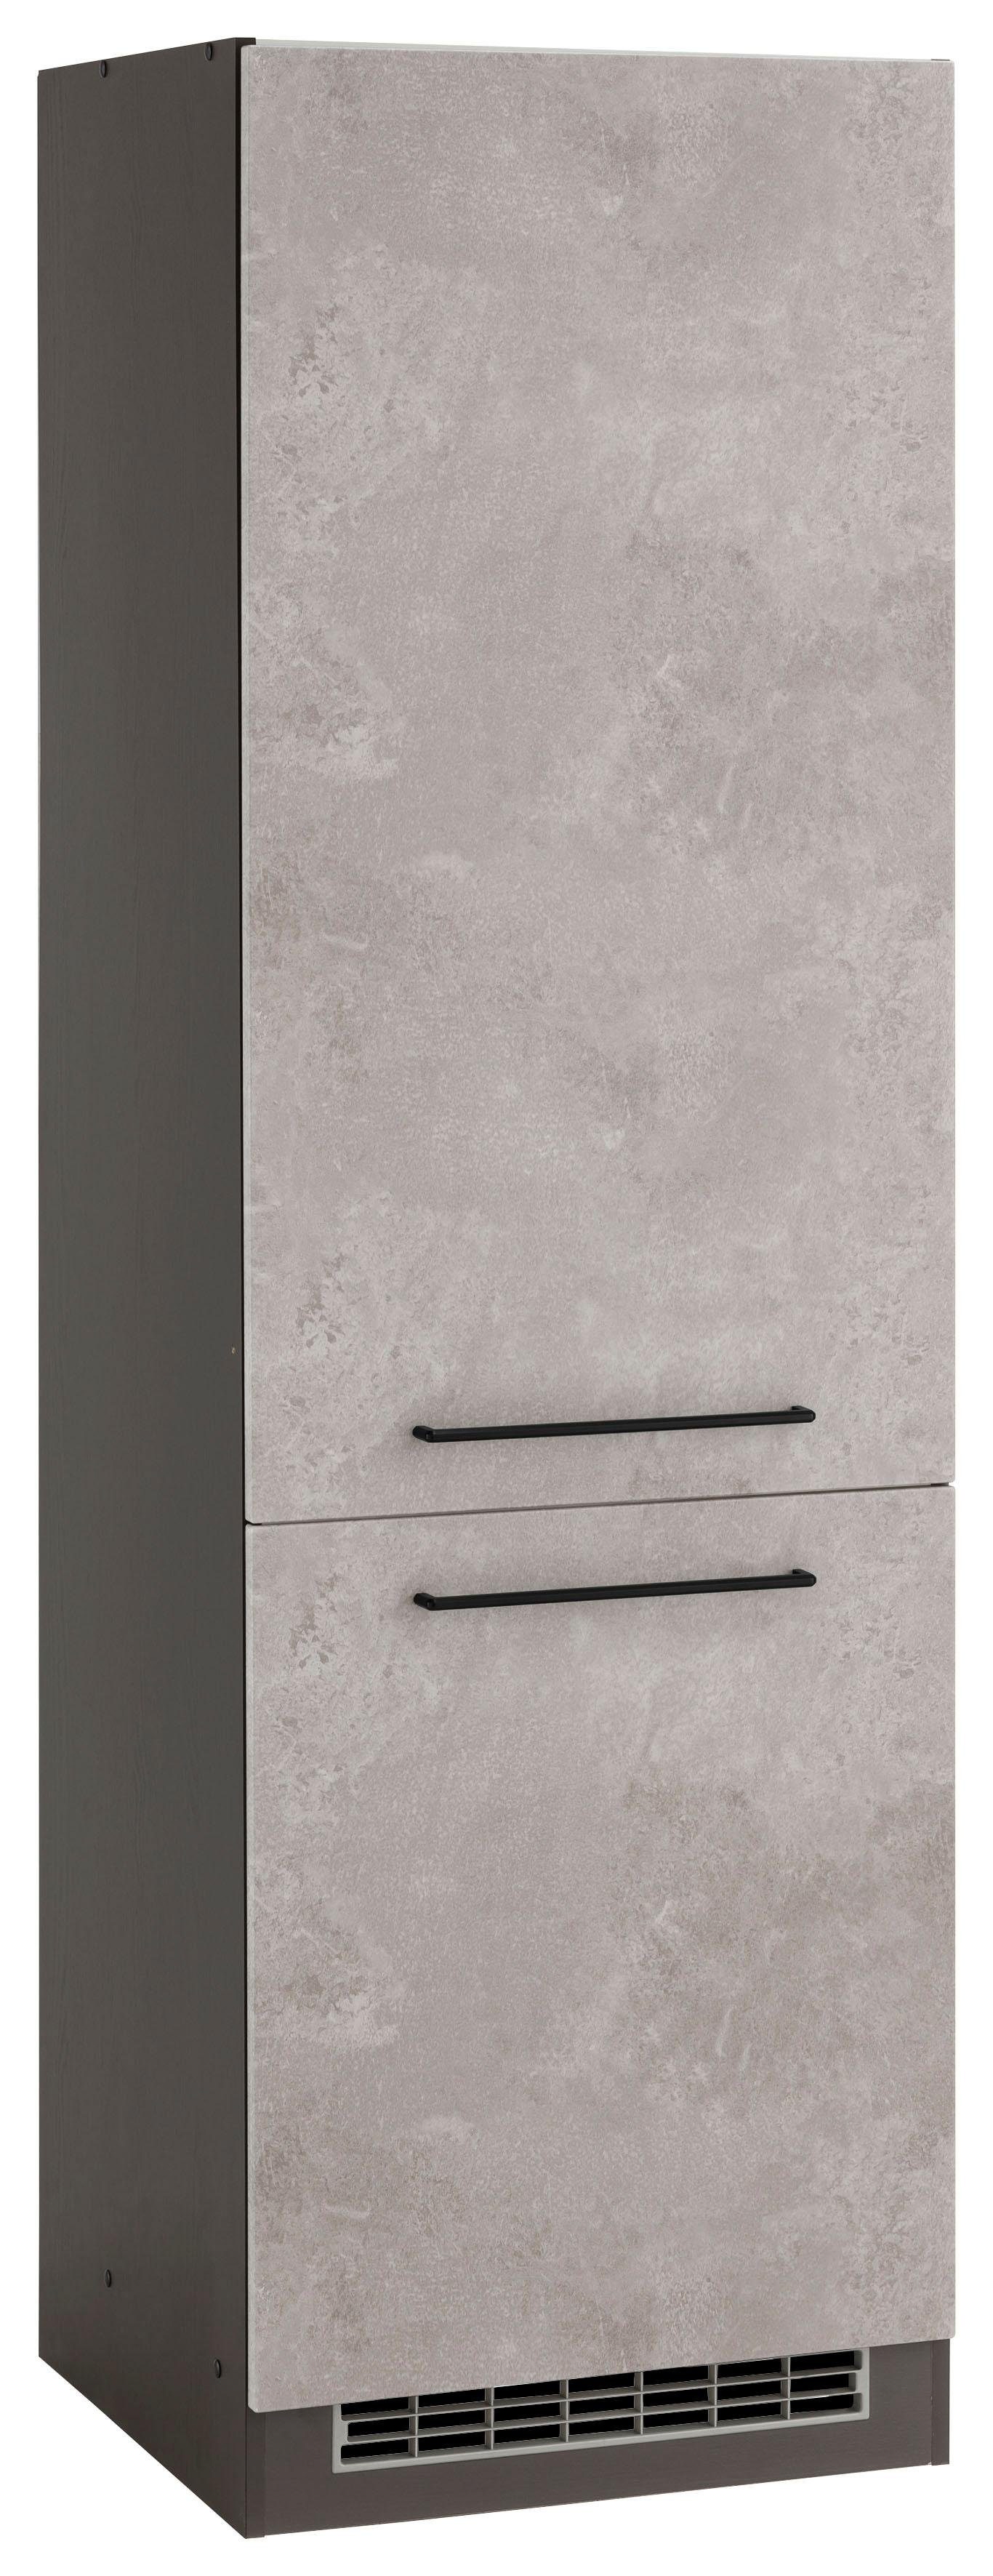 HELD MÖBEL Kühlumbauschrank Tulsa 60 cm breit, 200 cm hoch, 2 Türen, schwarzer Metallgriff, MDF Front betonfarben hell | grafit | Umbauschränke